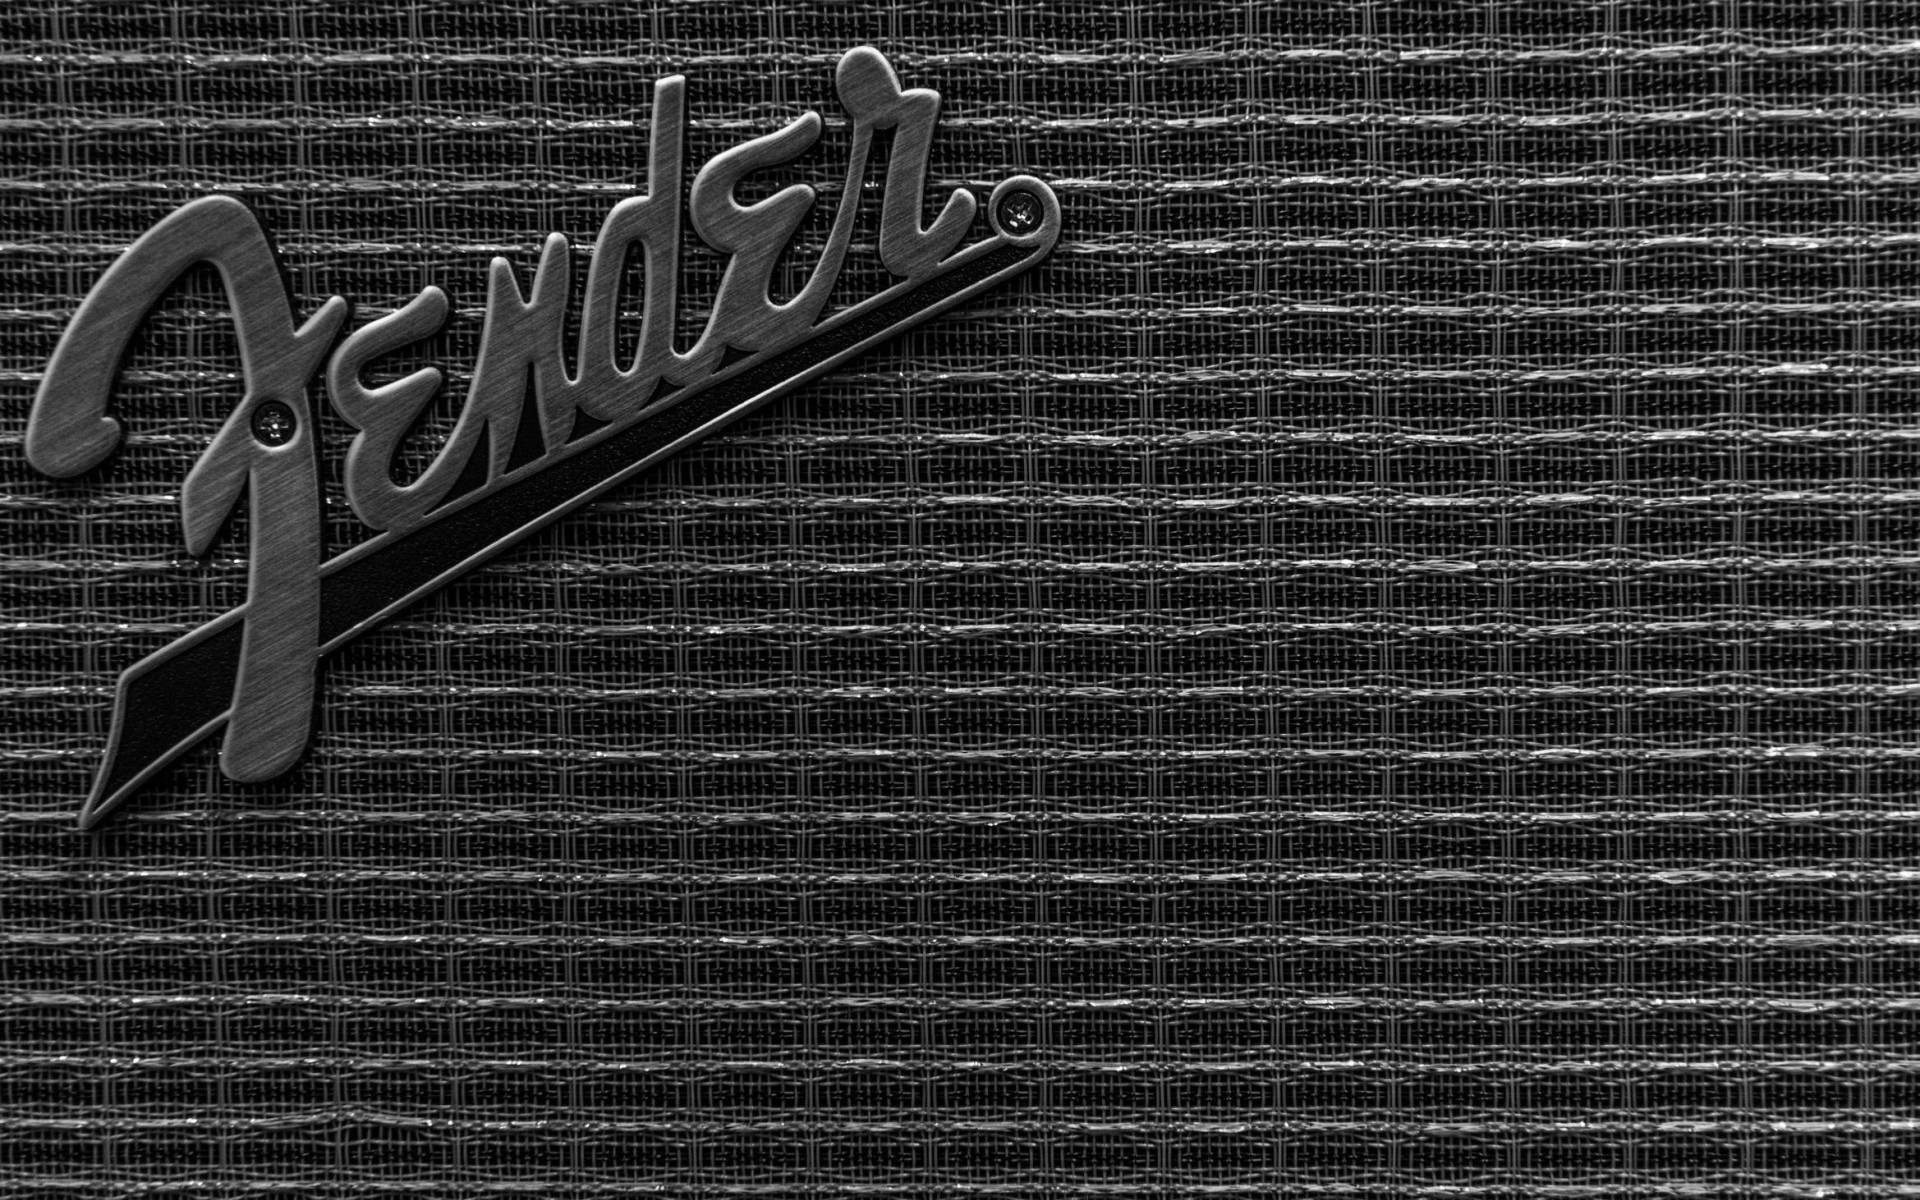 Fender Logo Wallpapers 4k Hd Fender Logo Backgrounds On Wallpaperbat